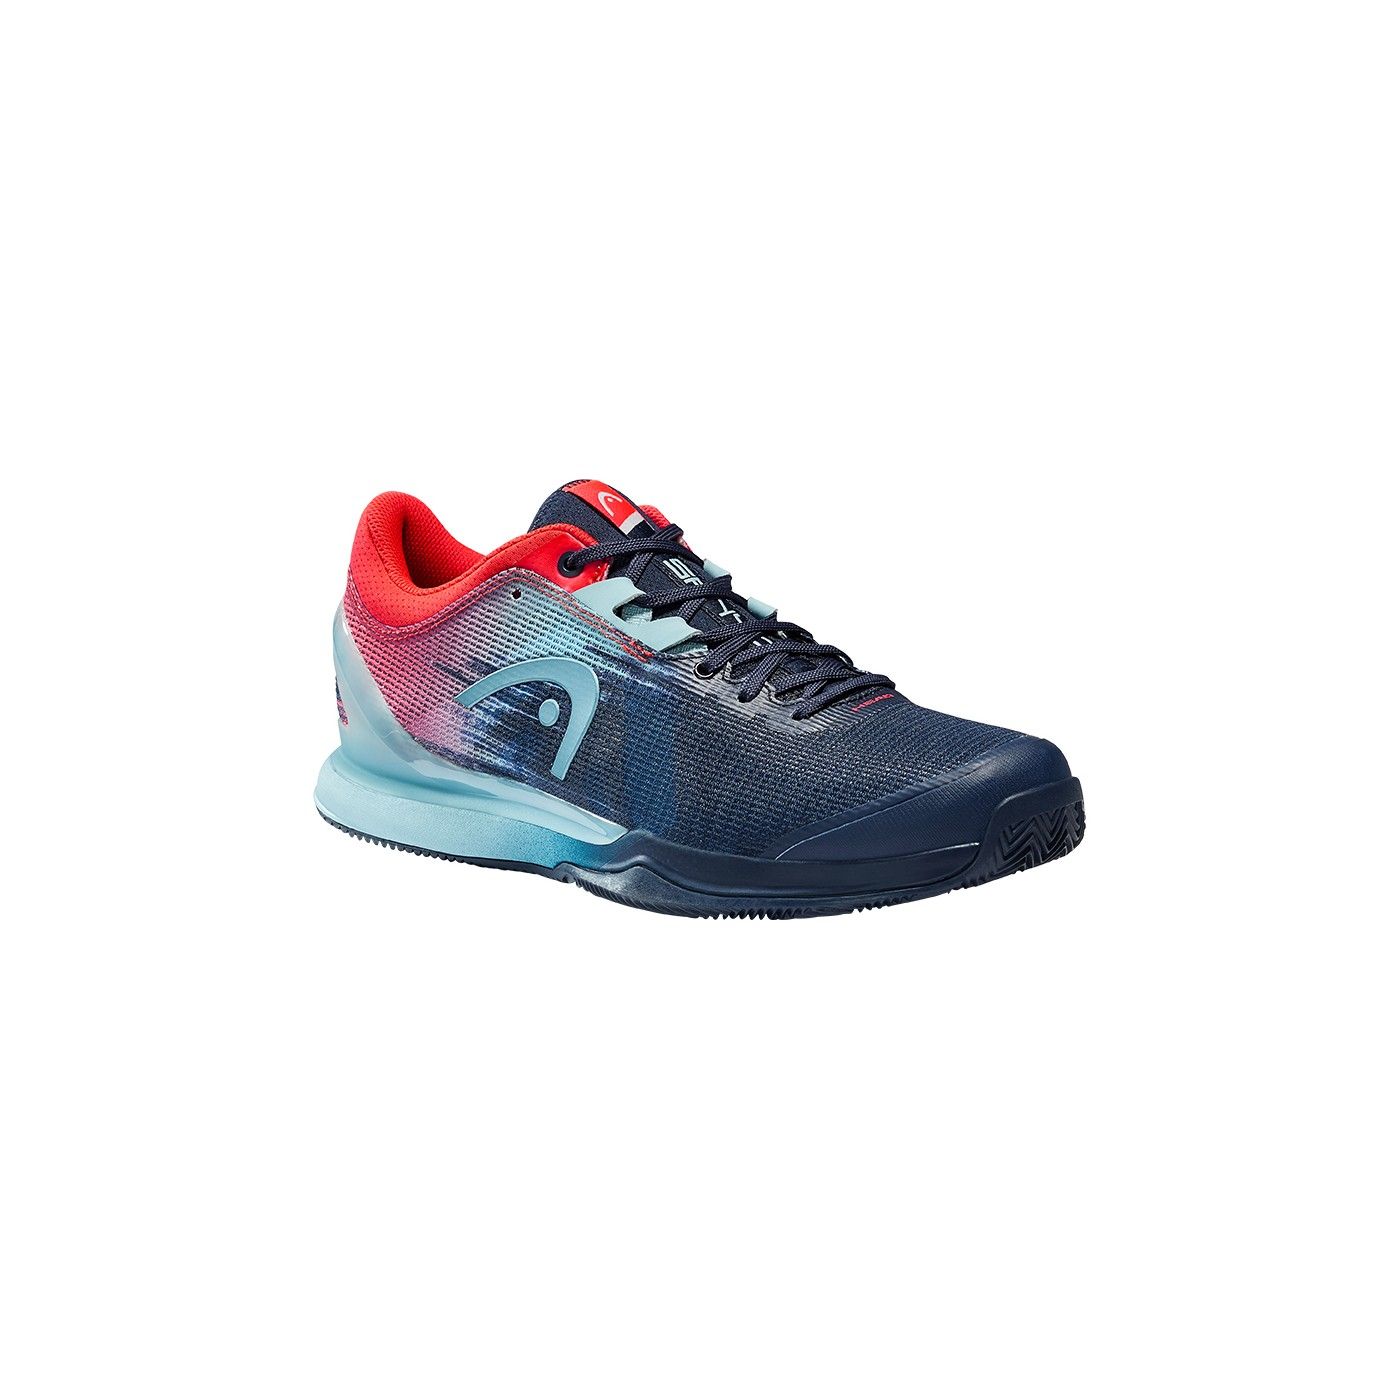 Zapatos Tenis Junior Head Sprint 2.0 020: Rojo/Negro/Iris 275128-020